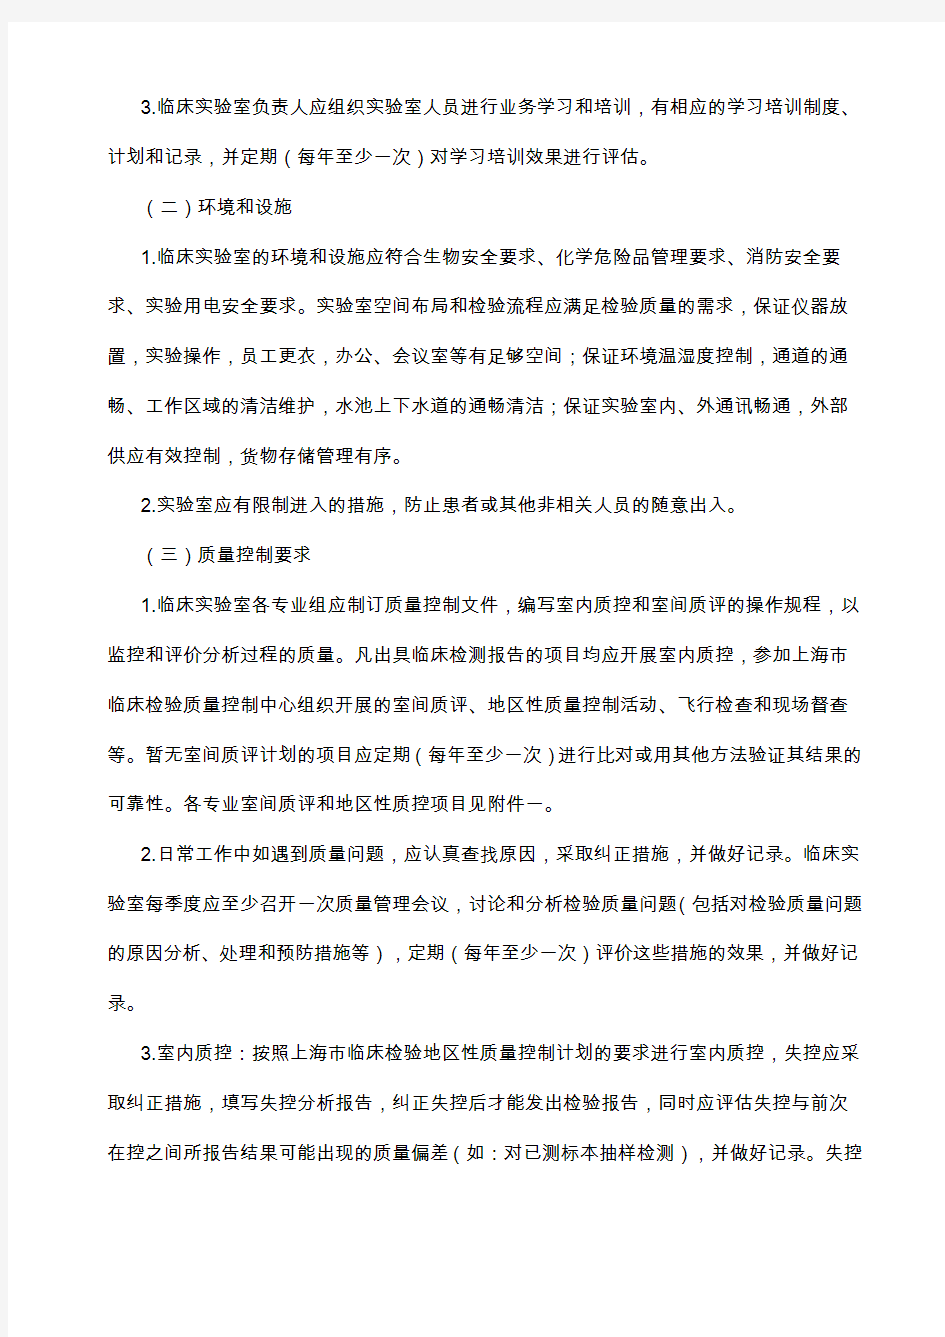 上海市医疗机构临床实验室质量管理基本内容和要求